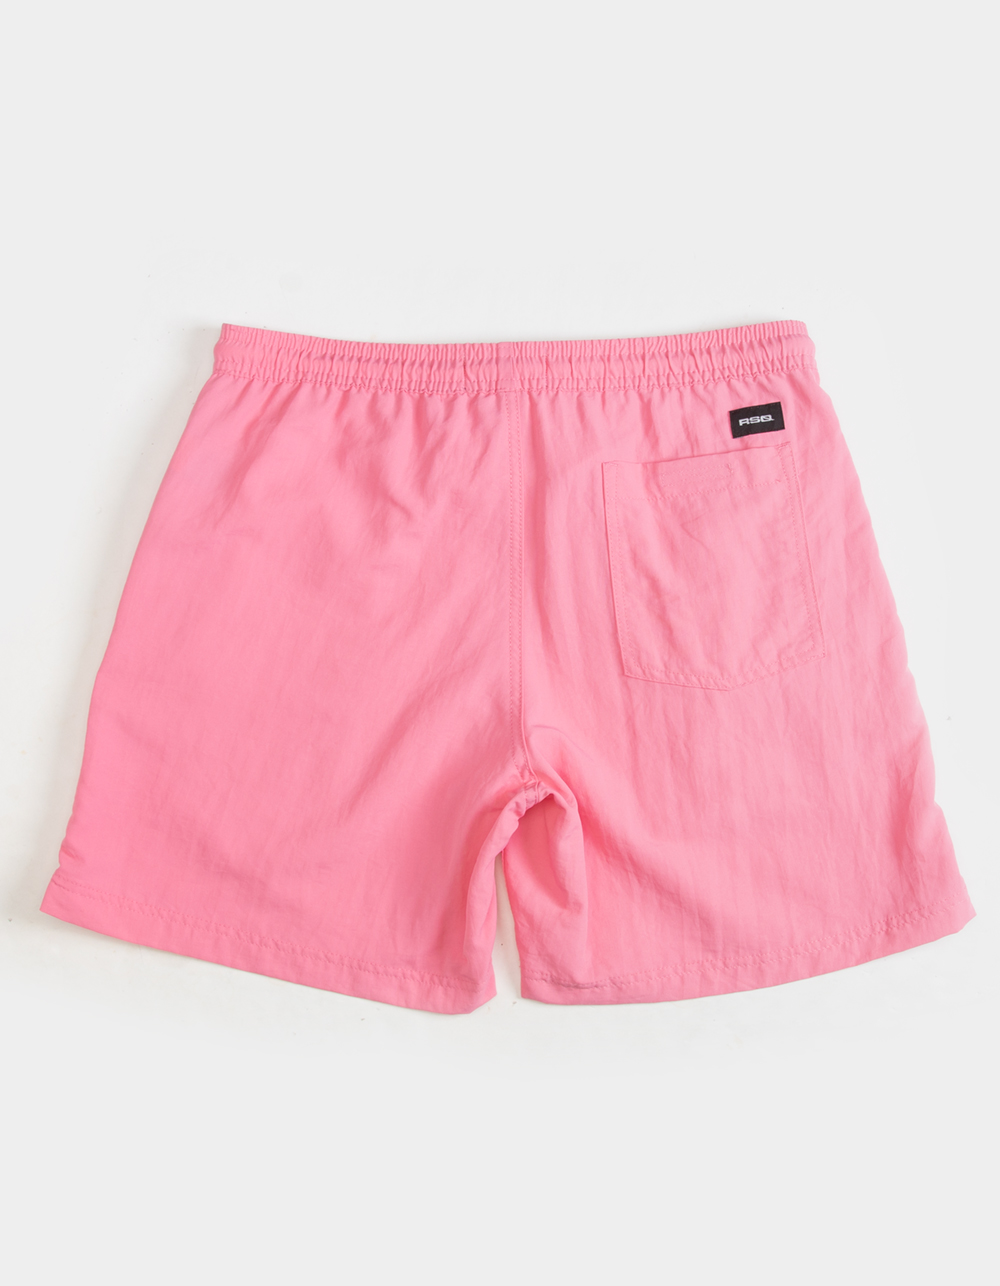 Rsq 6 Nylon Shorts - Pink - Medium